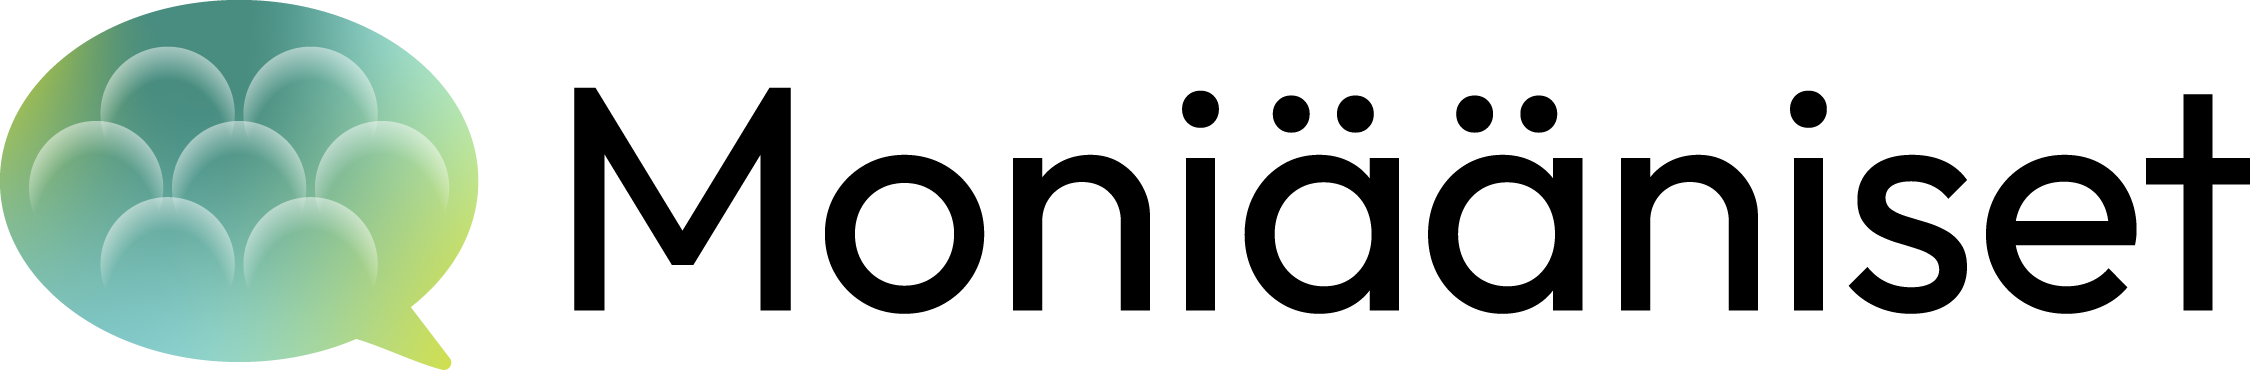 Suomen Moniääniset ry-logo